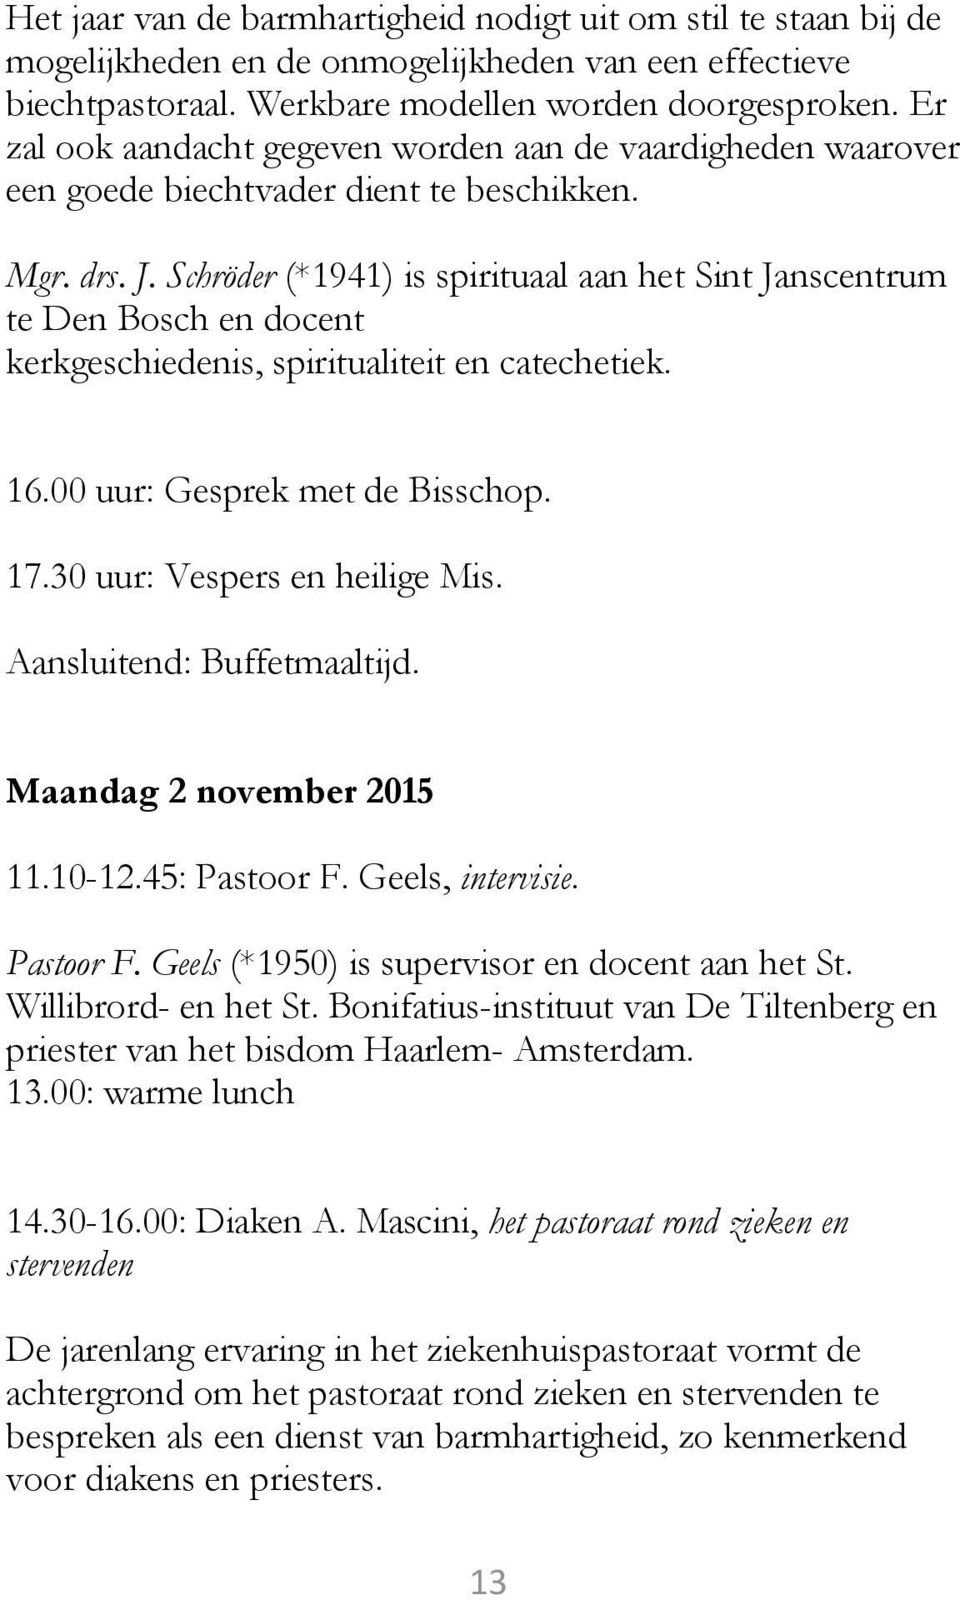 Schröder (*1941) is spirituaal aan het Sint Janscentrum te Den Bosch en docent kerkgeschiedenis, spiritualiteit en catechetiek. 16.00 uur: Gesprek met de Bisschop. 17.30 uur: Vespers en heilige Mis.